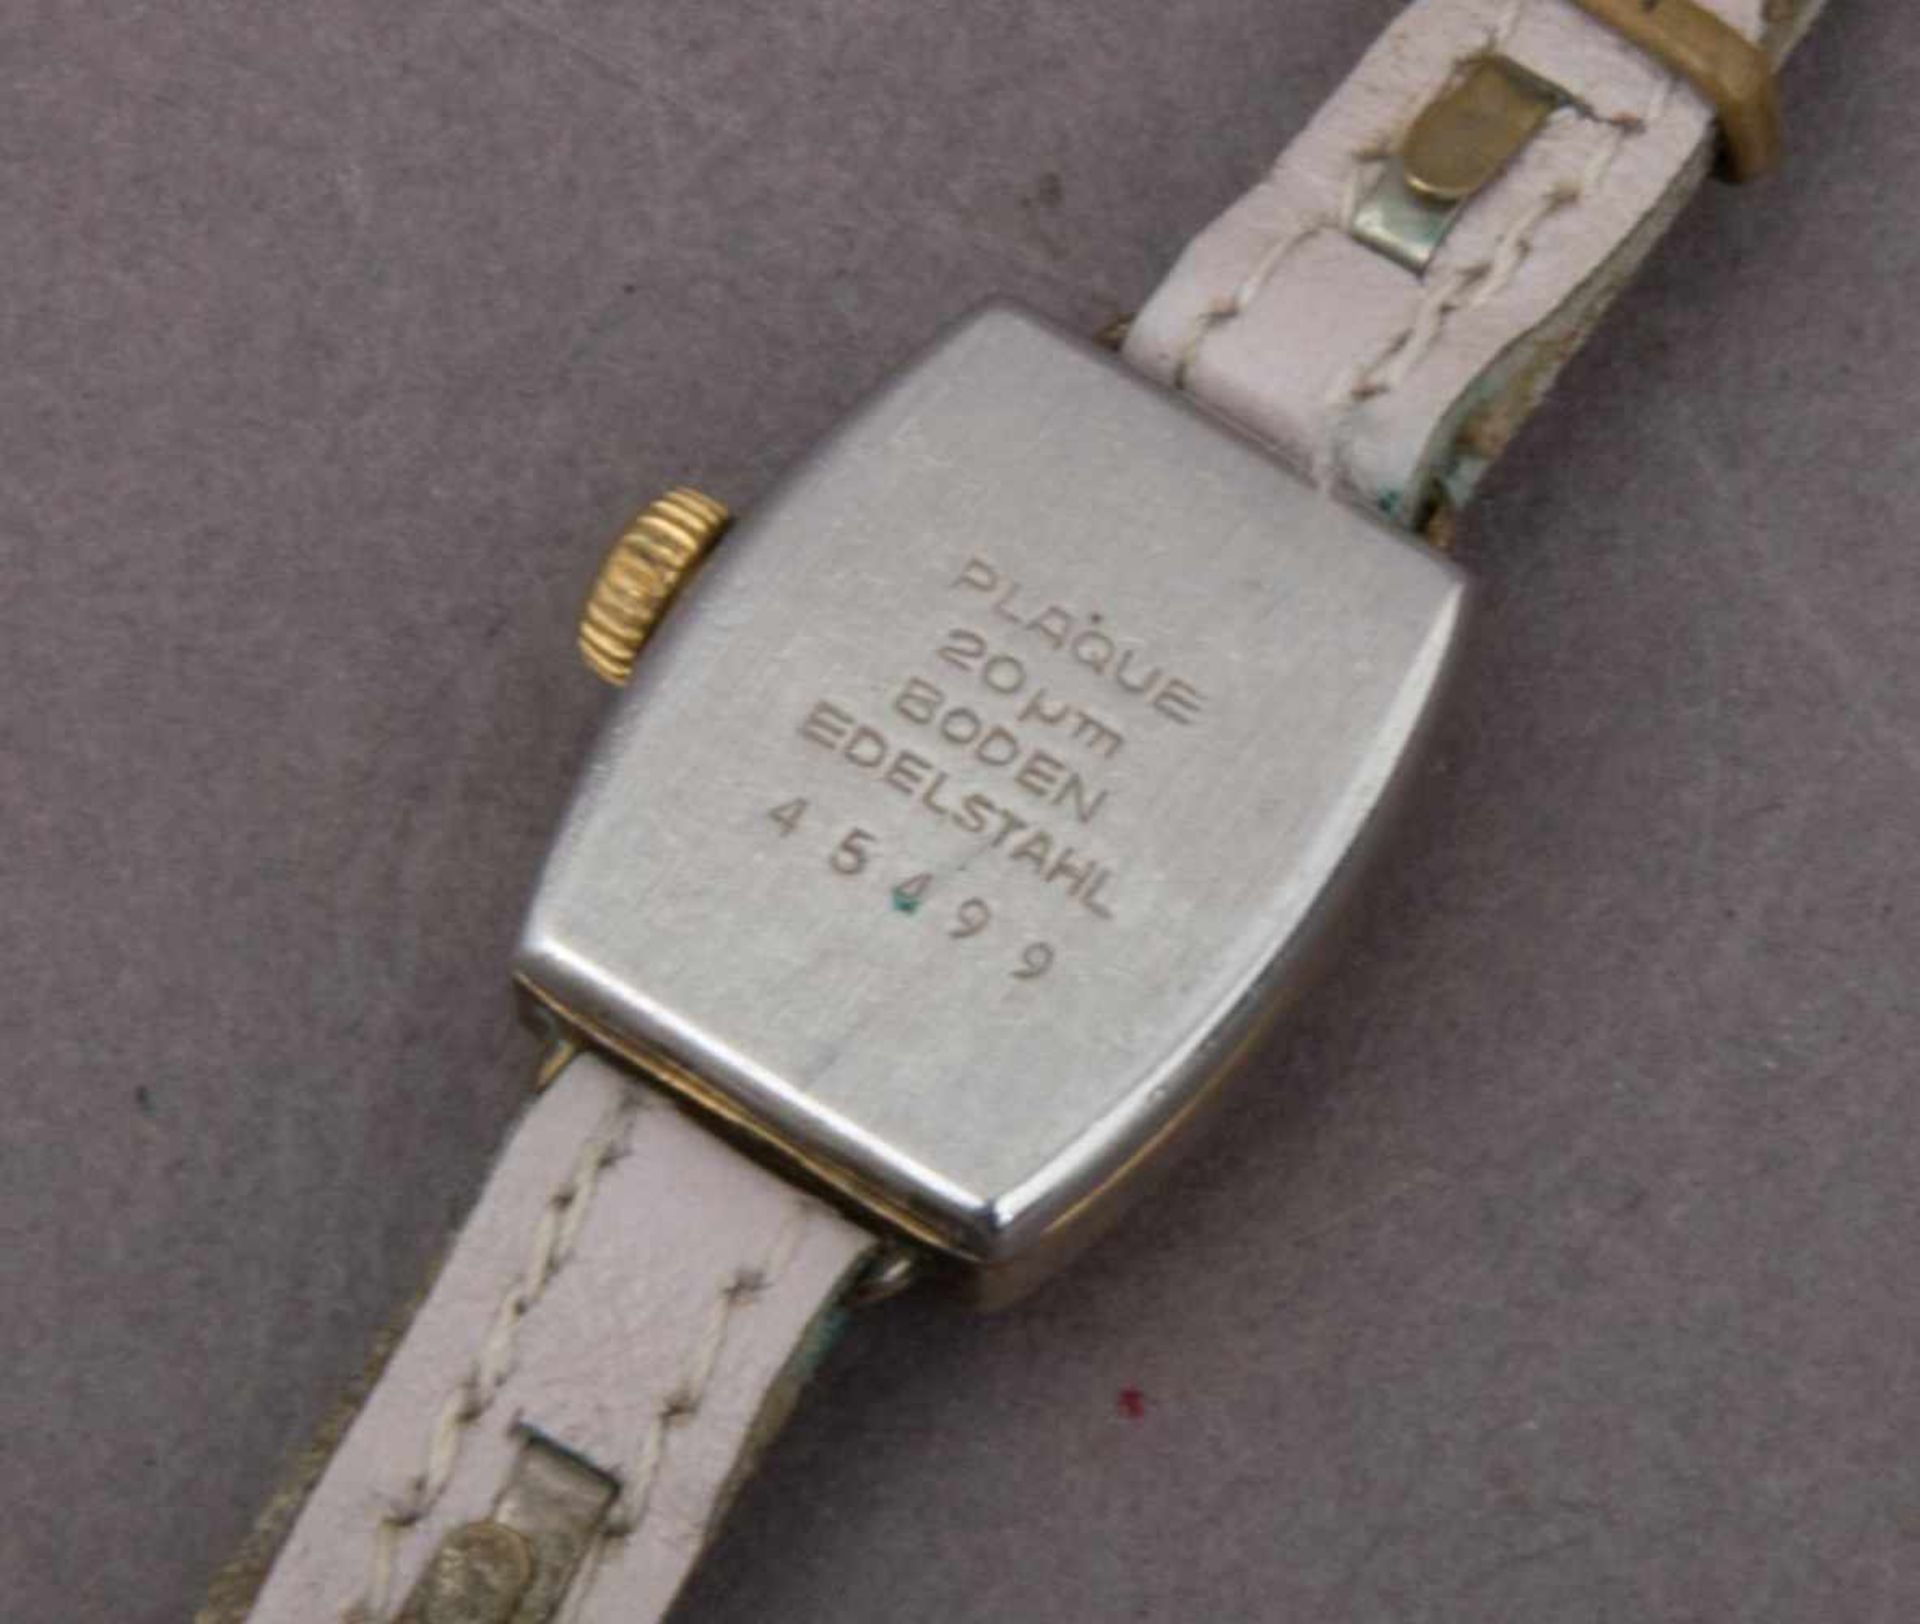 3 alte RUHLA - Armbanduhren, Mittel 20. Jhd. Versch. Modelle, Formen, Größen, Erhalt & Funktionen. - Image 8 of 8